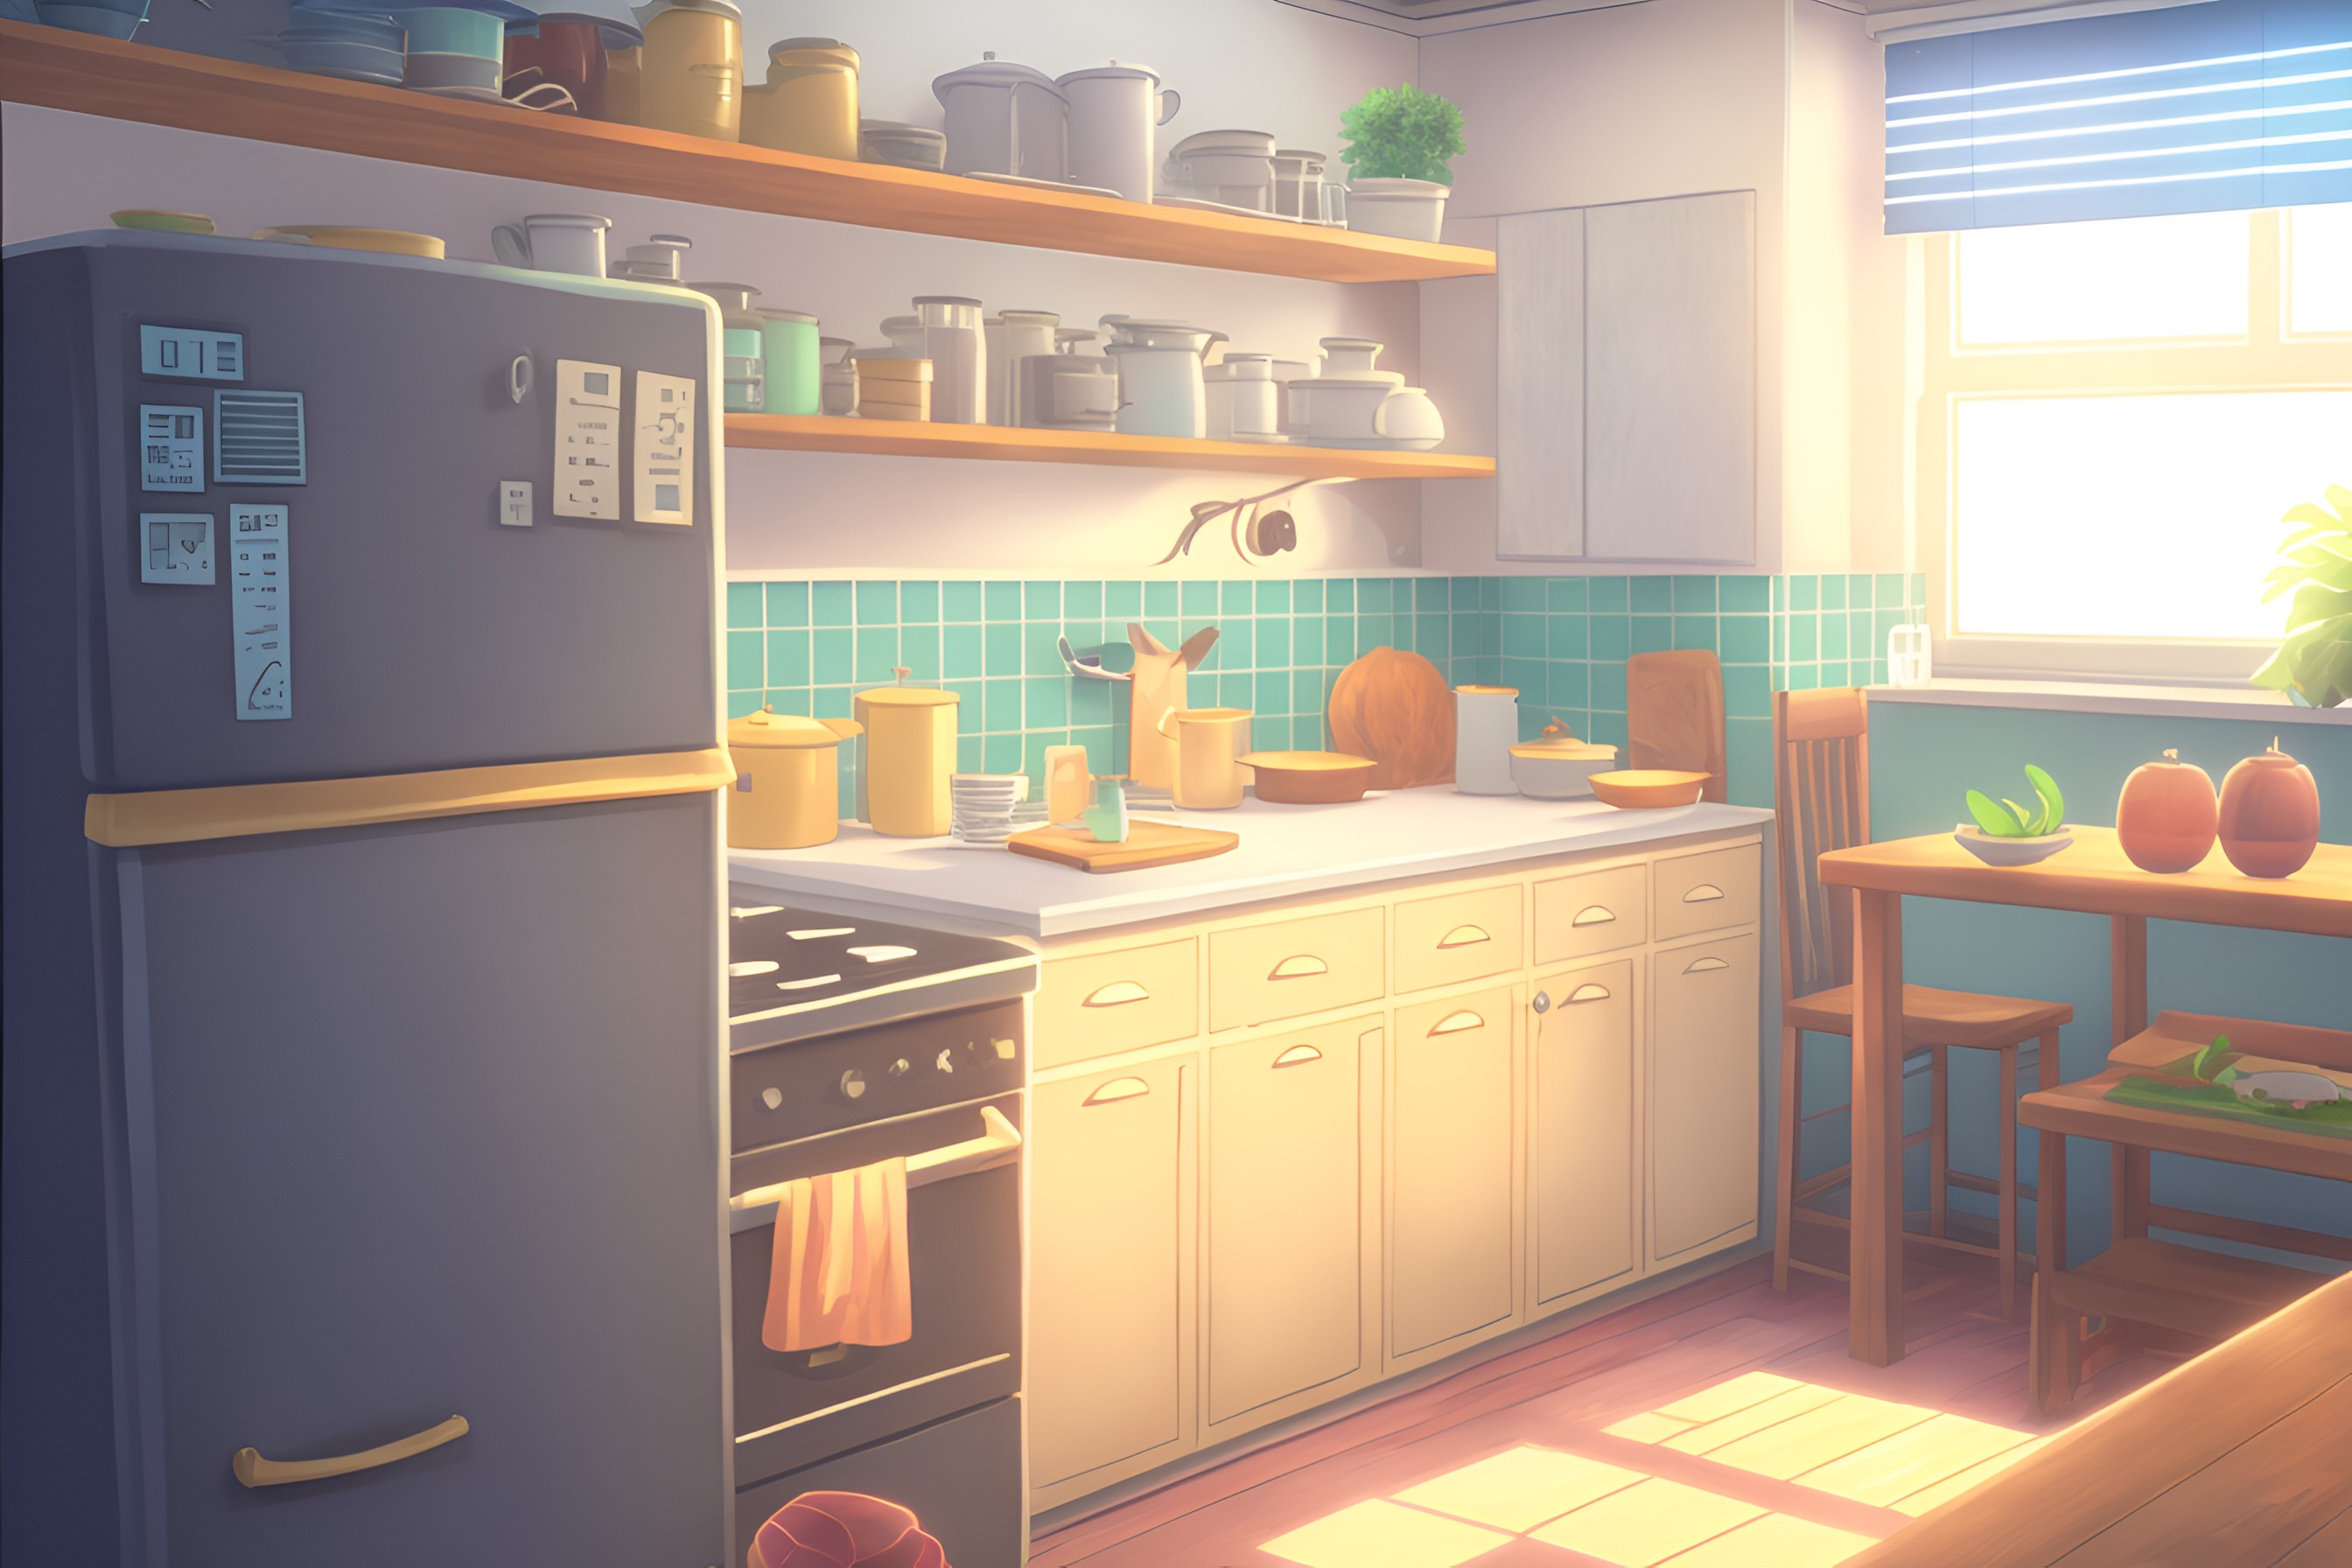 Free HD Cozy Kitchen VN backgrounds by VNA - VisualNovelAssets